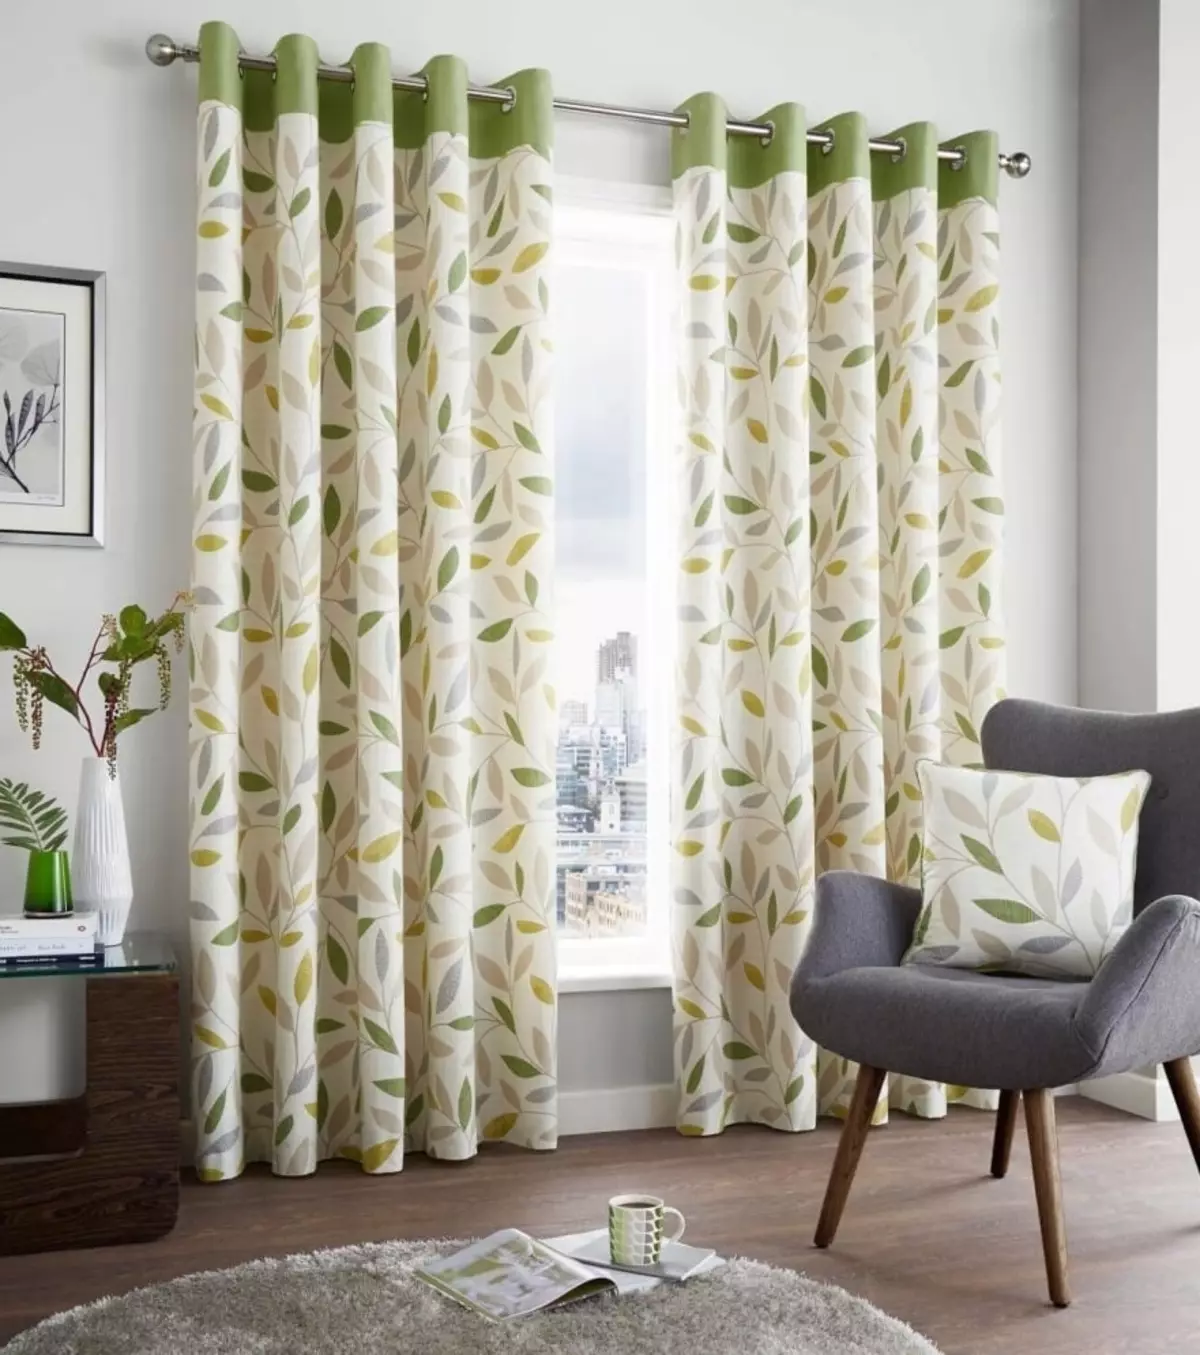 绿色窗帘在客厅内部（51张照片）：绿色窗帘设计在大厅里。内部深绿色和其他色调的窗帘 9790_14